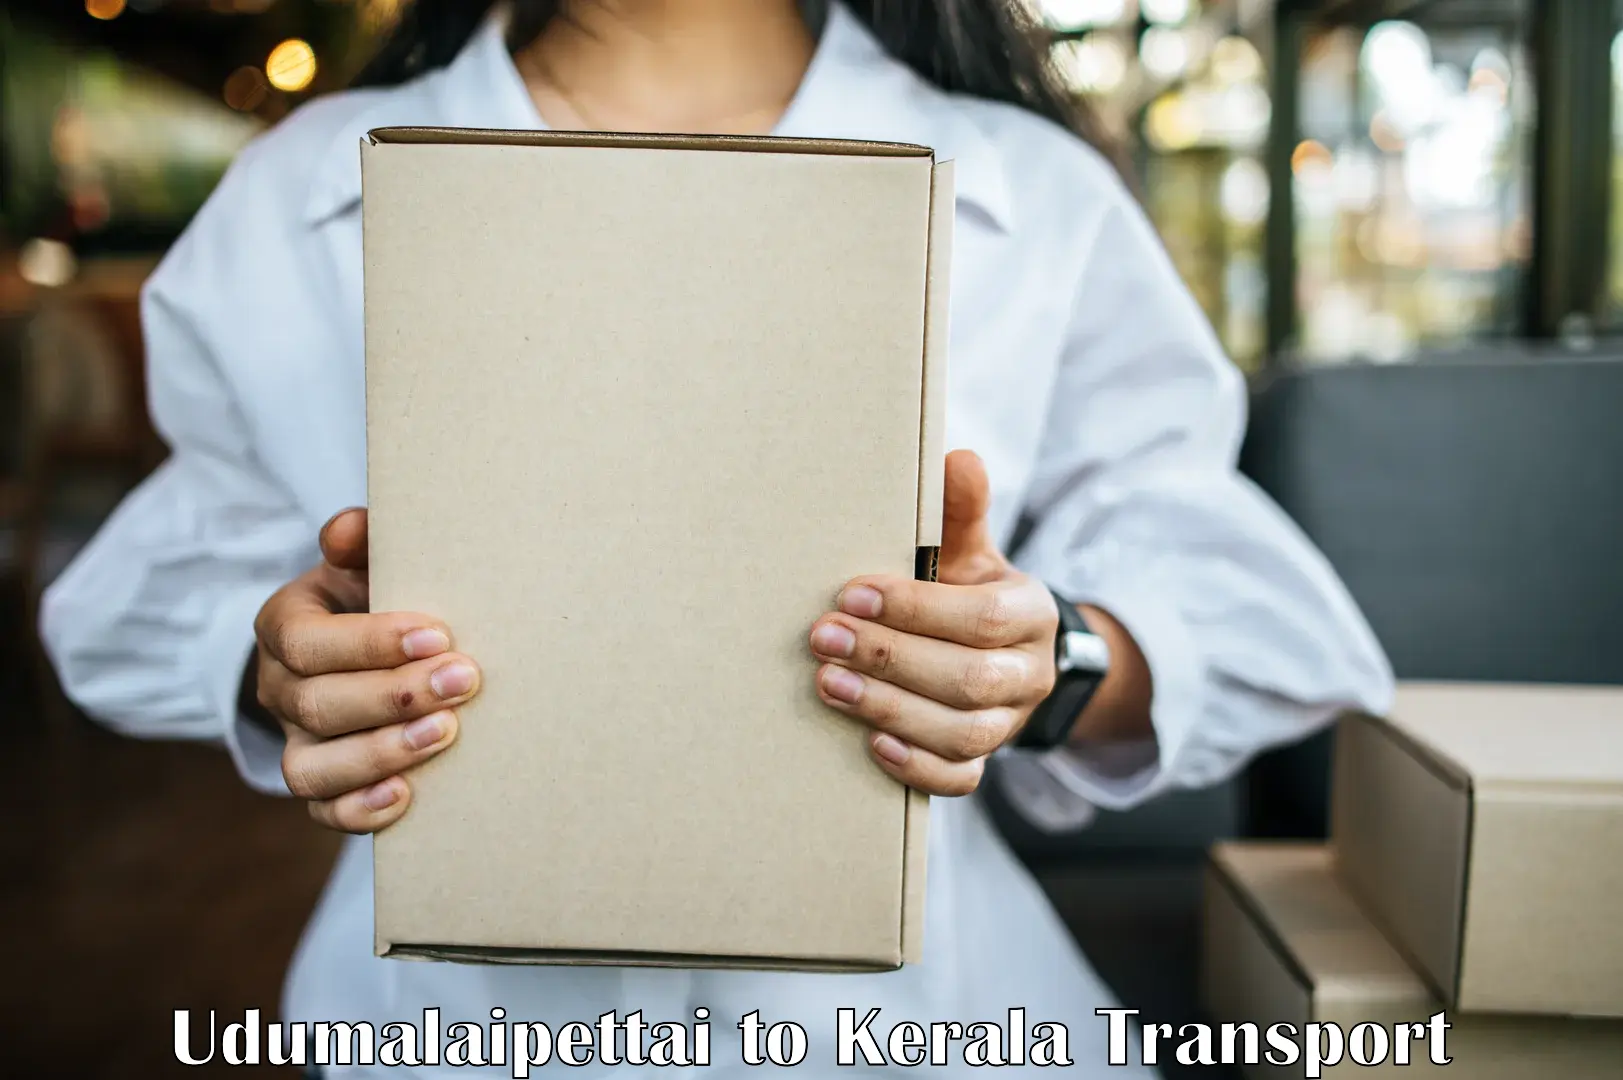 Online transport service Udumalaipettai to Kuchi